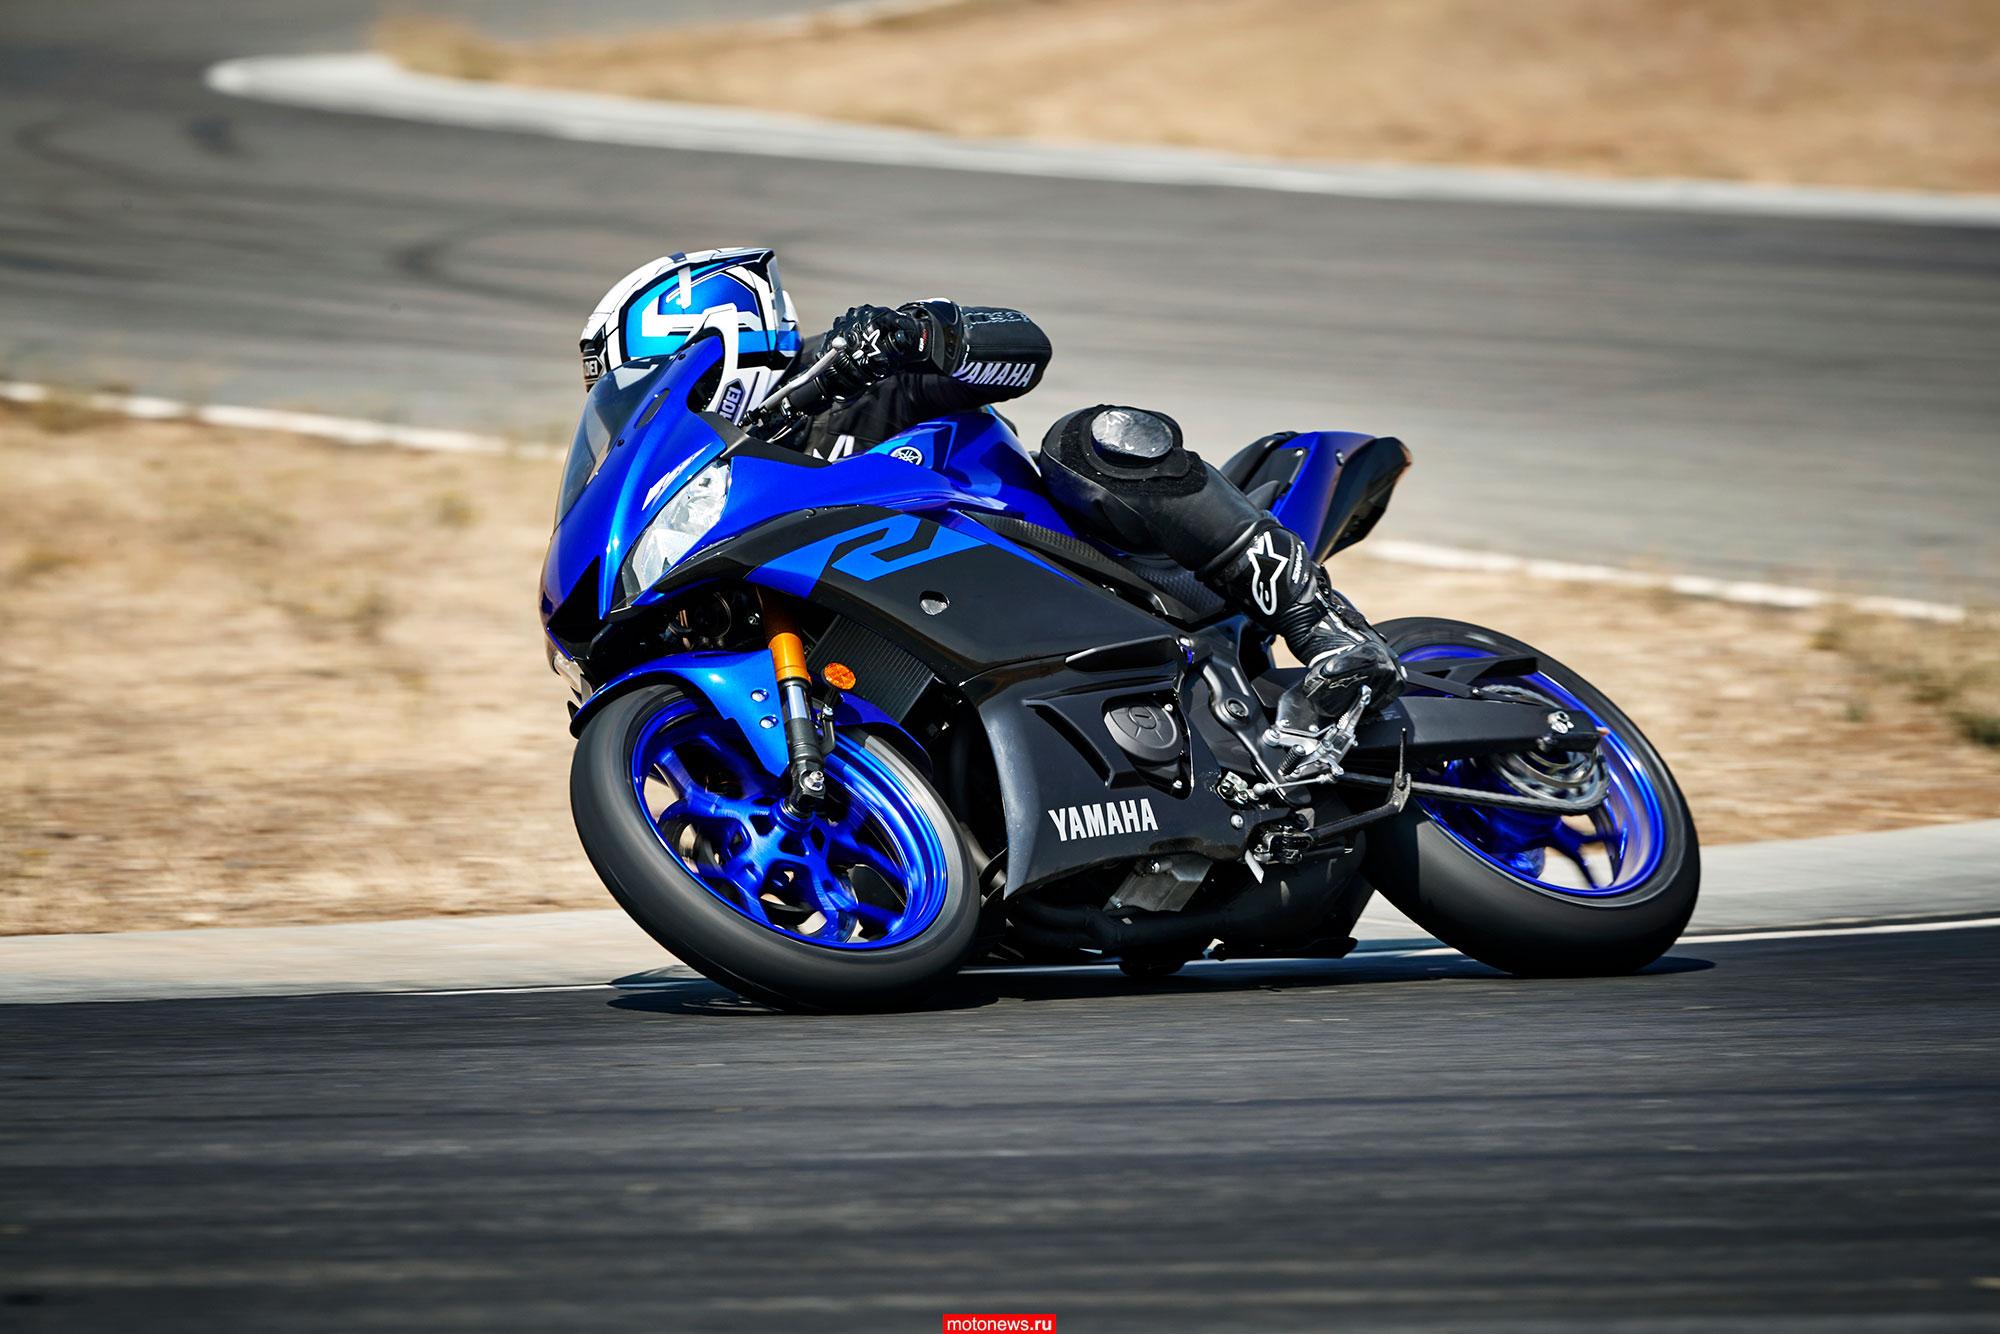 Фото мотоциклов спортивных. Мотоцикл Yamaha YZF-r3. Мотоцикл Yamaha r3. Ямаха YZF r3. Yamaha r3 2019.